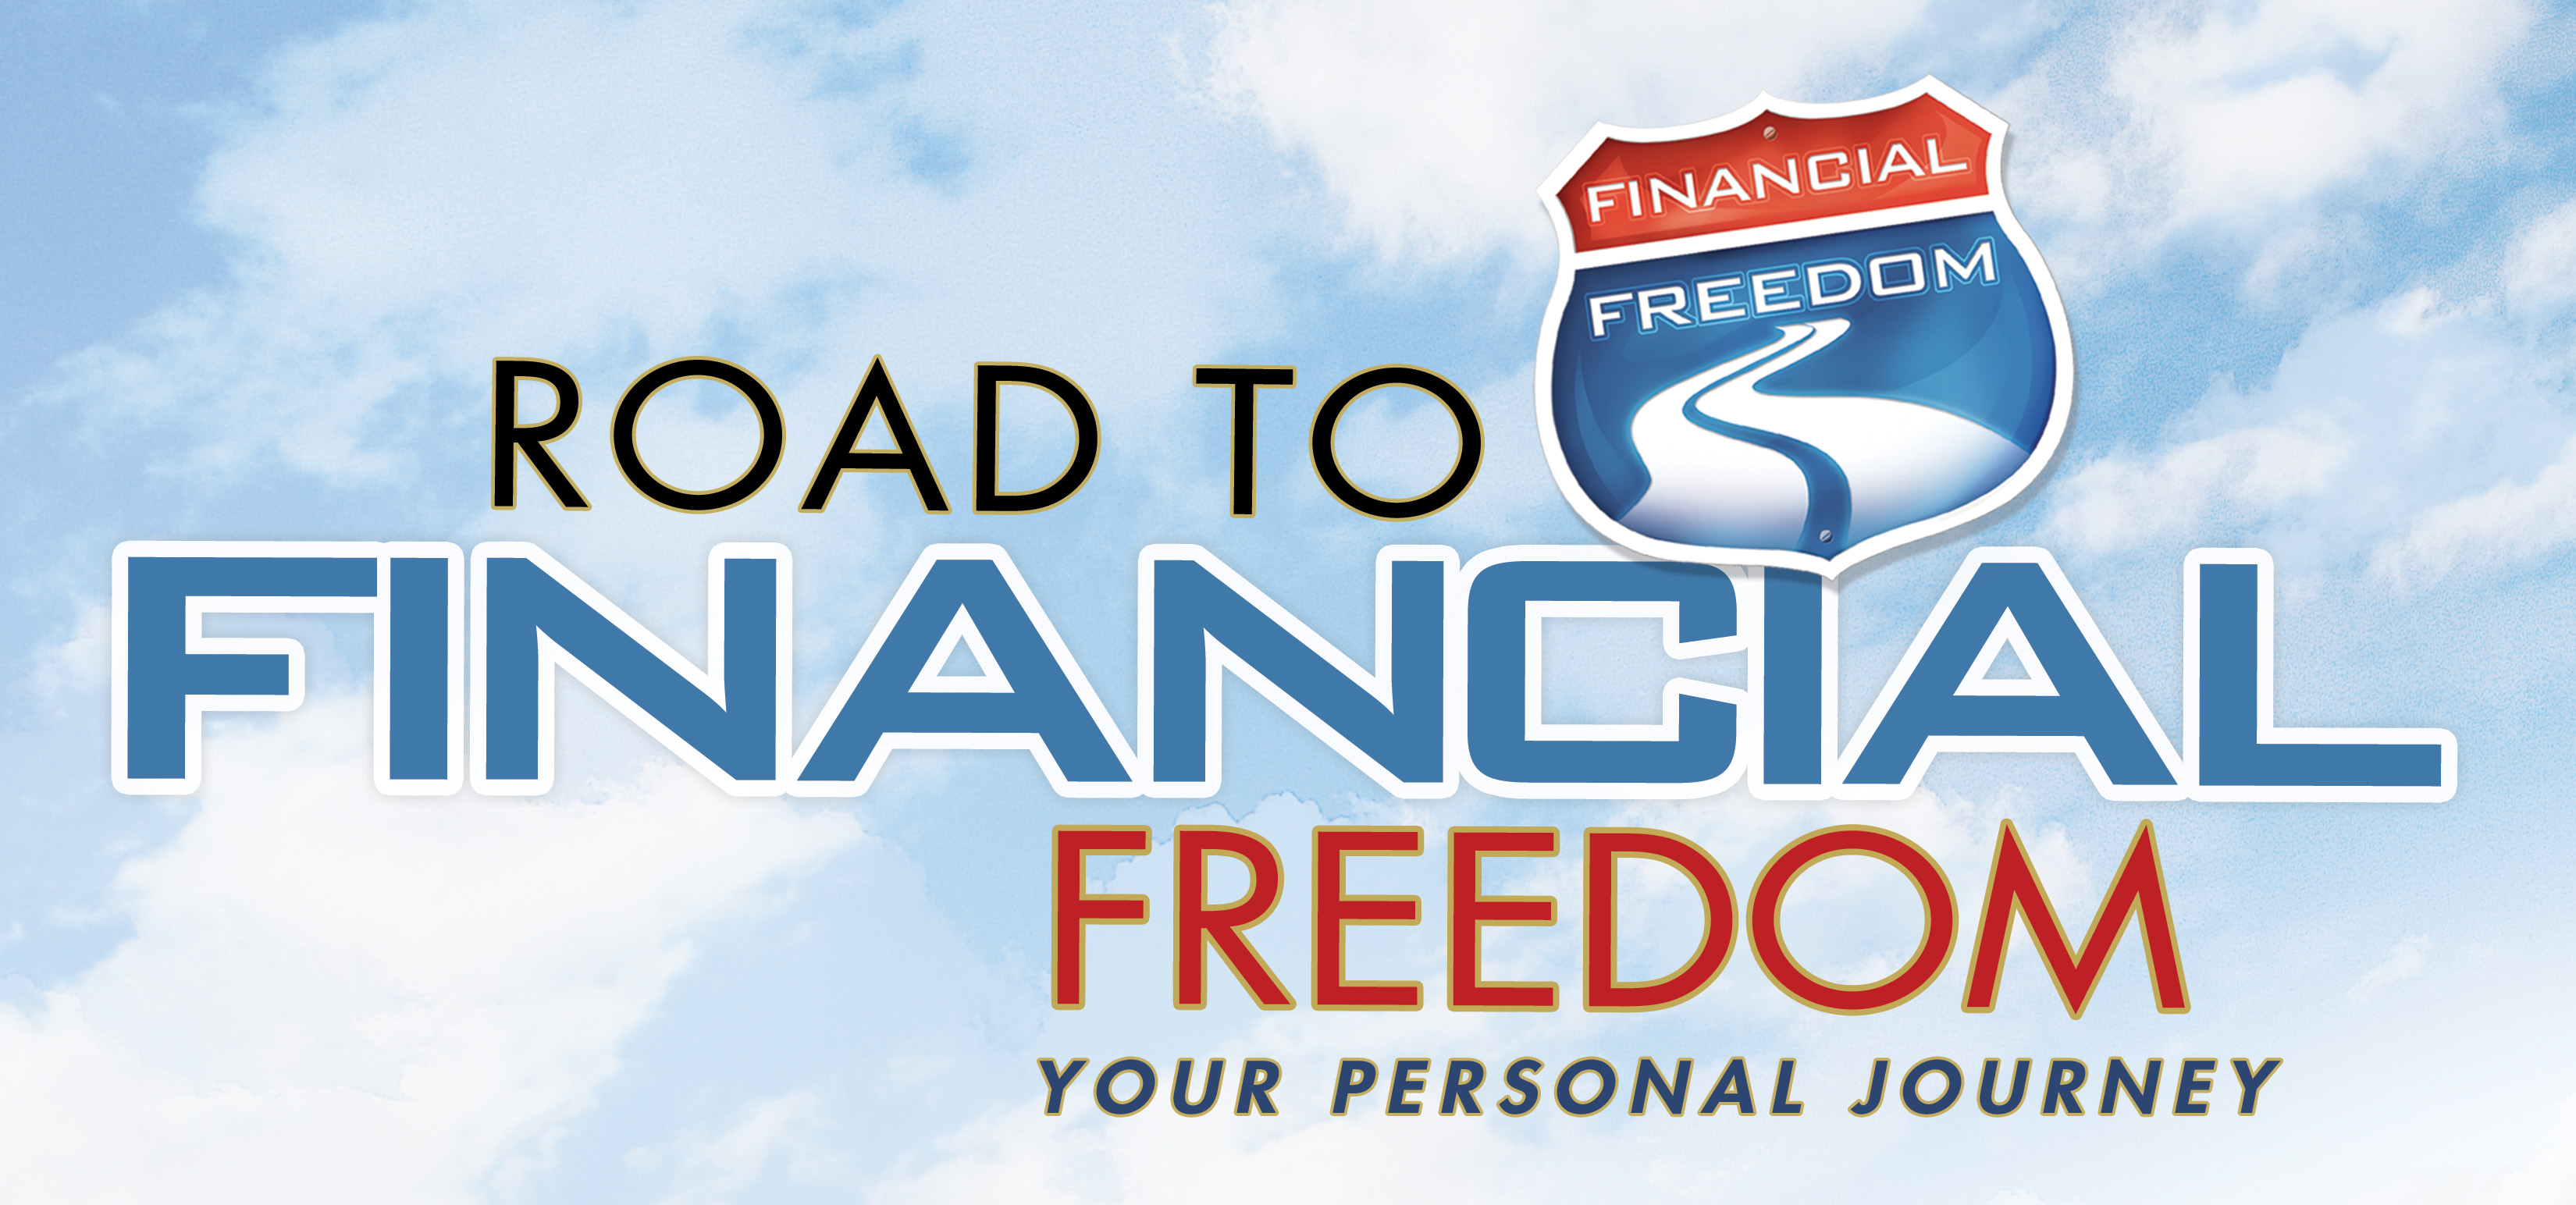 Financial-freedom